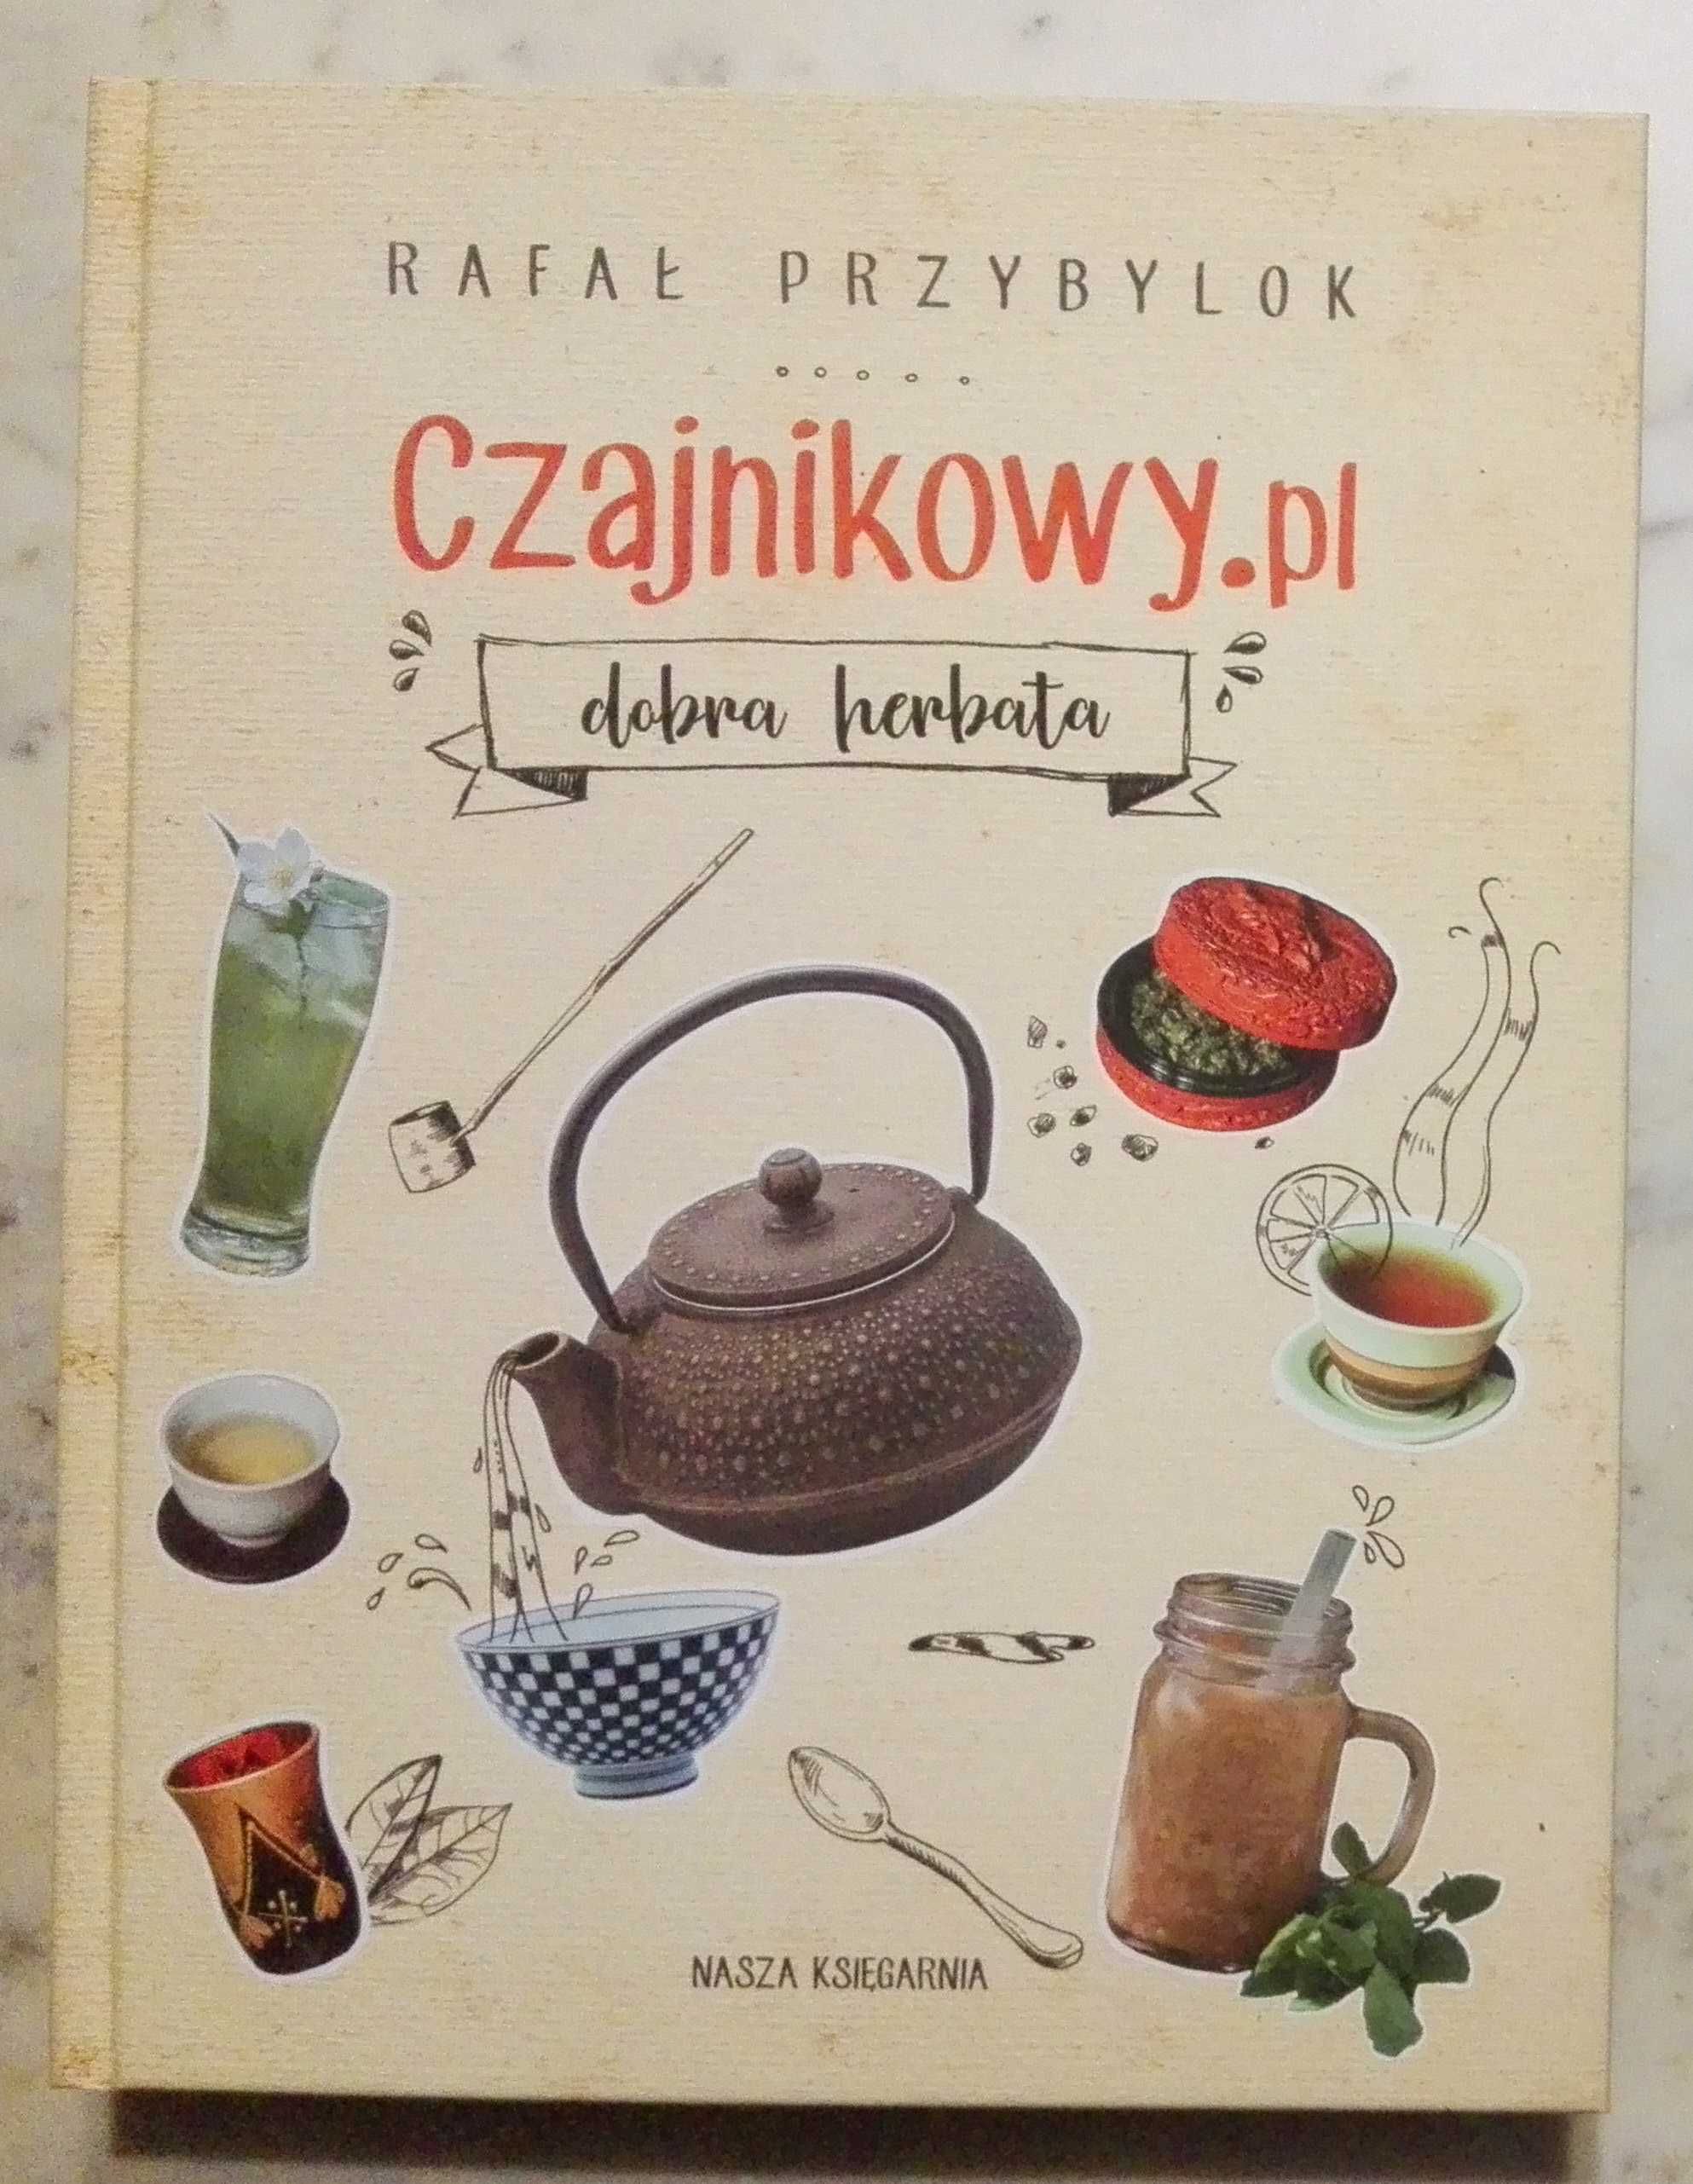 Czajnikowy.pl - dobra herbata Rafał Przybylok